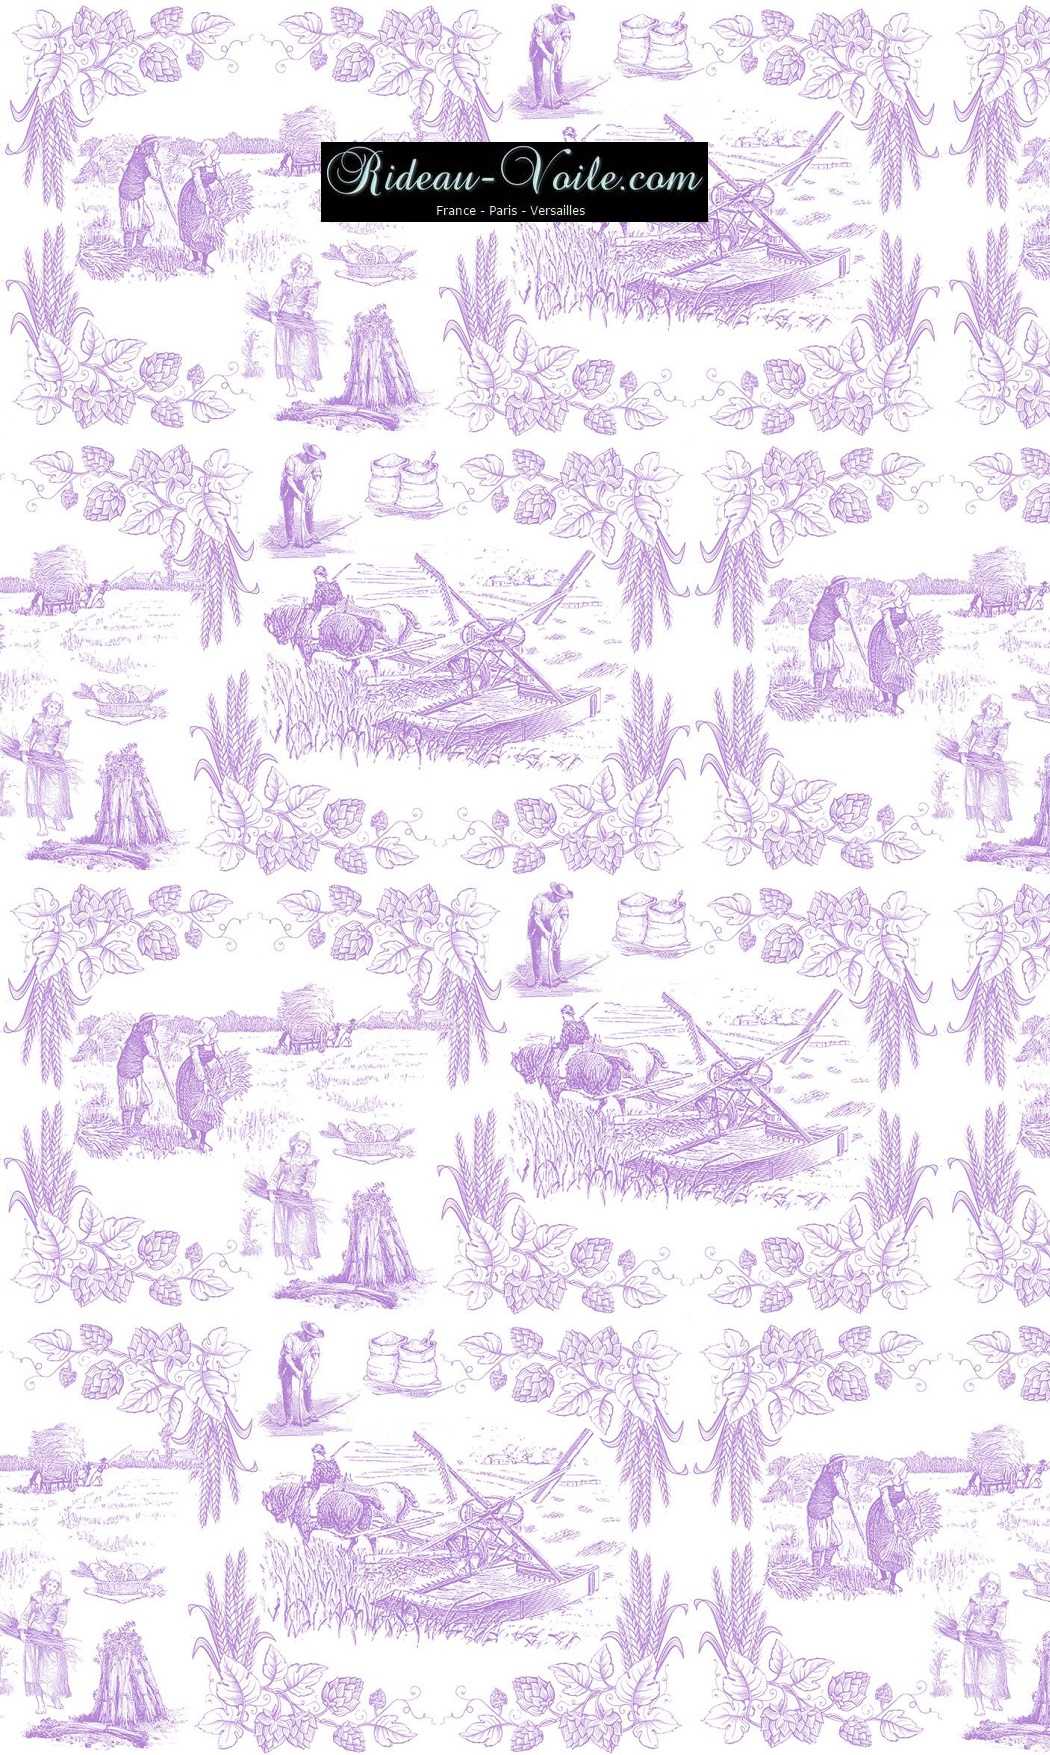 Toile de Jouy tissu au mètre ameublement textile Paris Versailles Yvelines decoration french pattern haut gamme violet